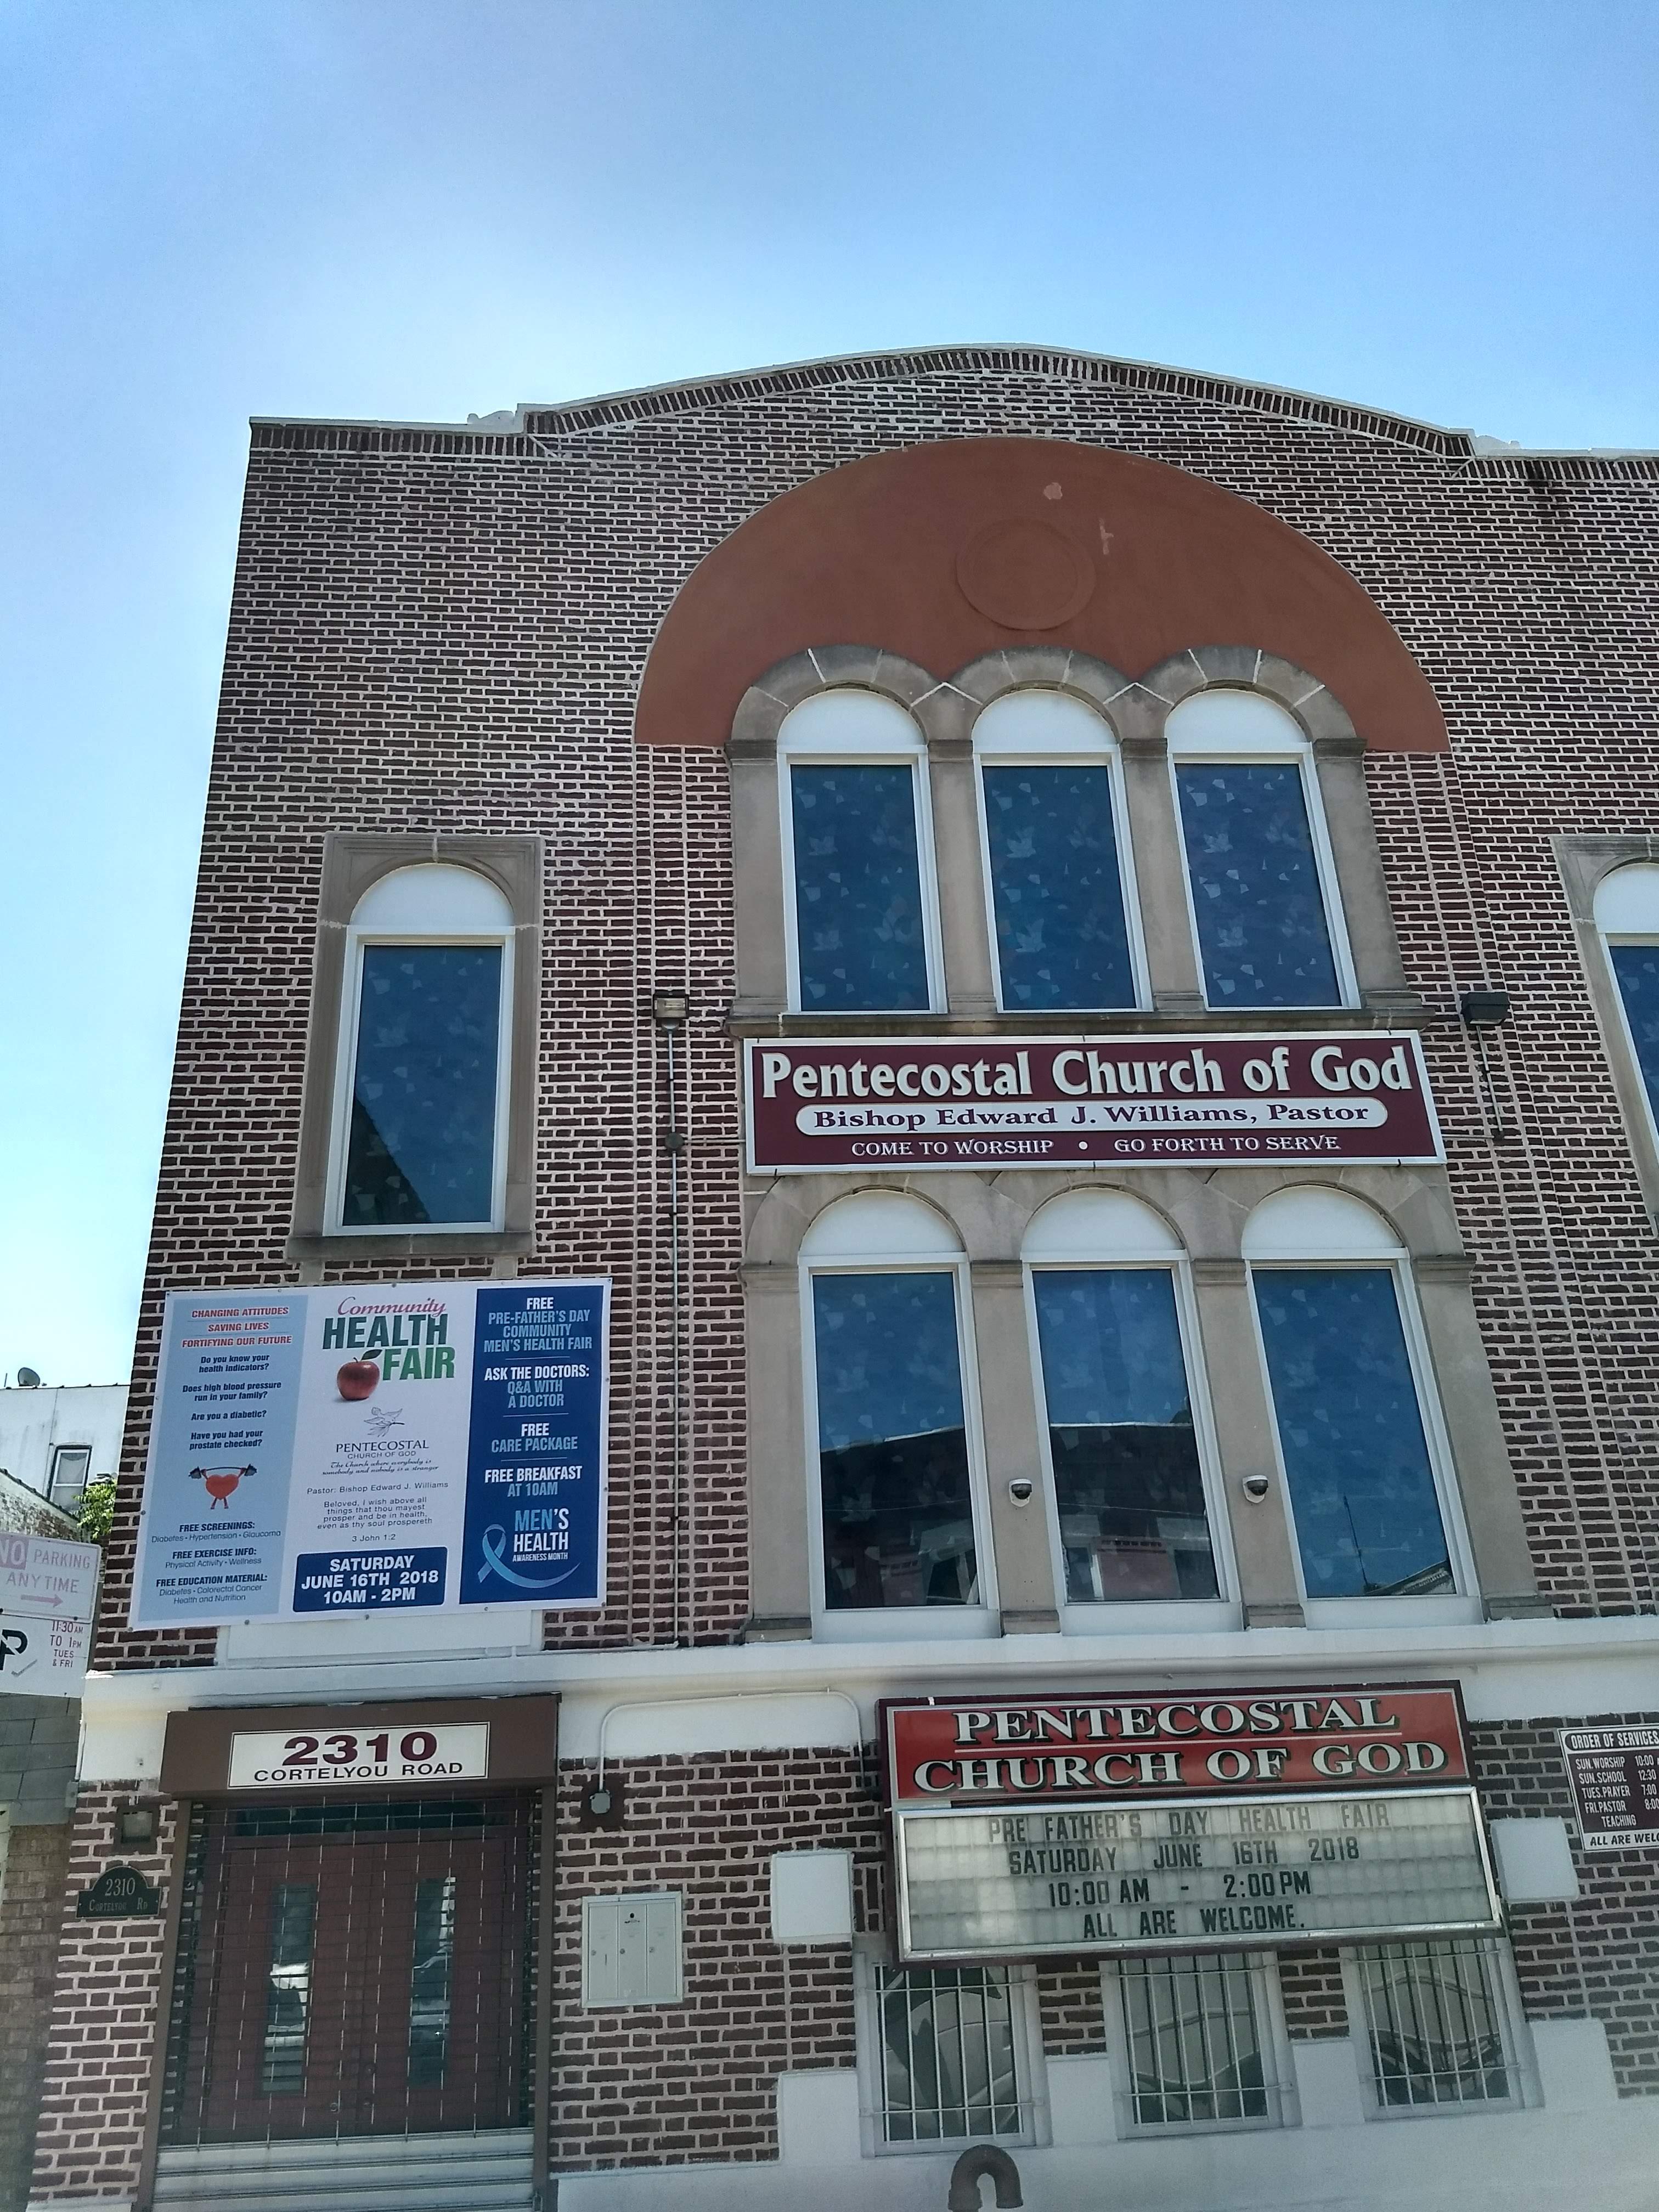 Pentecostal Church of God 2310 Cortelyou Road, Brooklyn